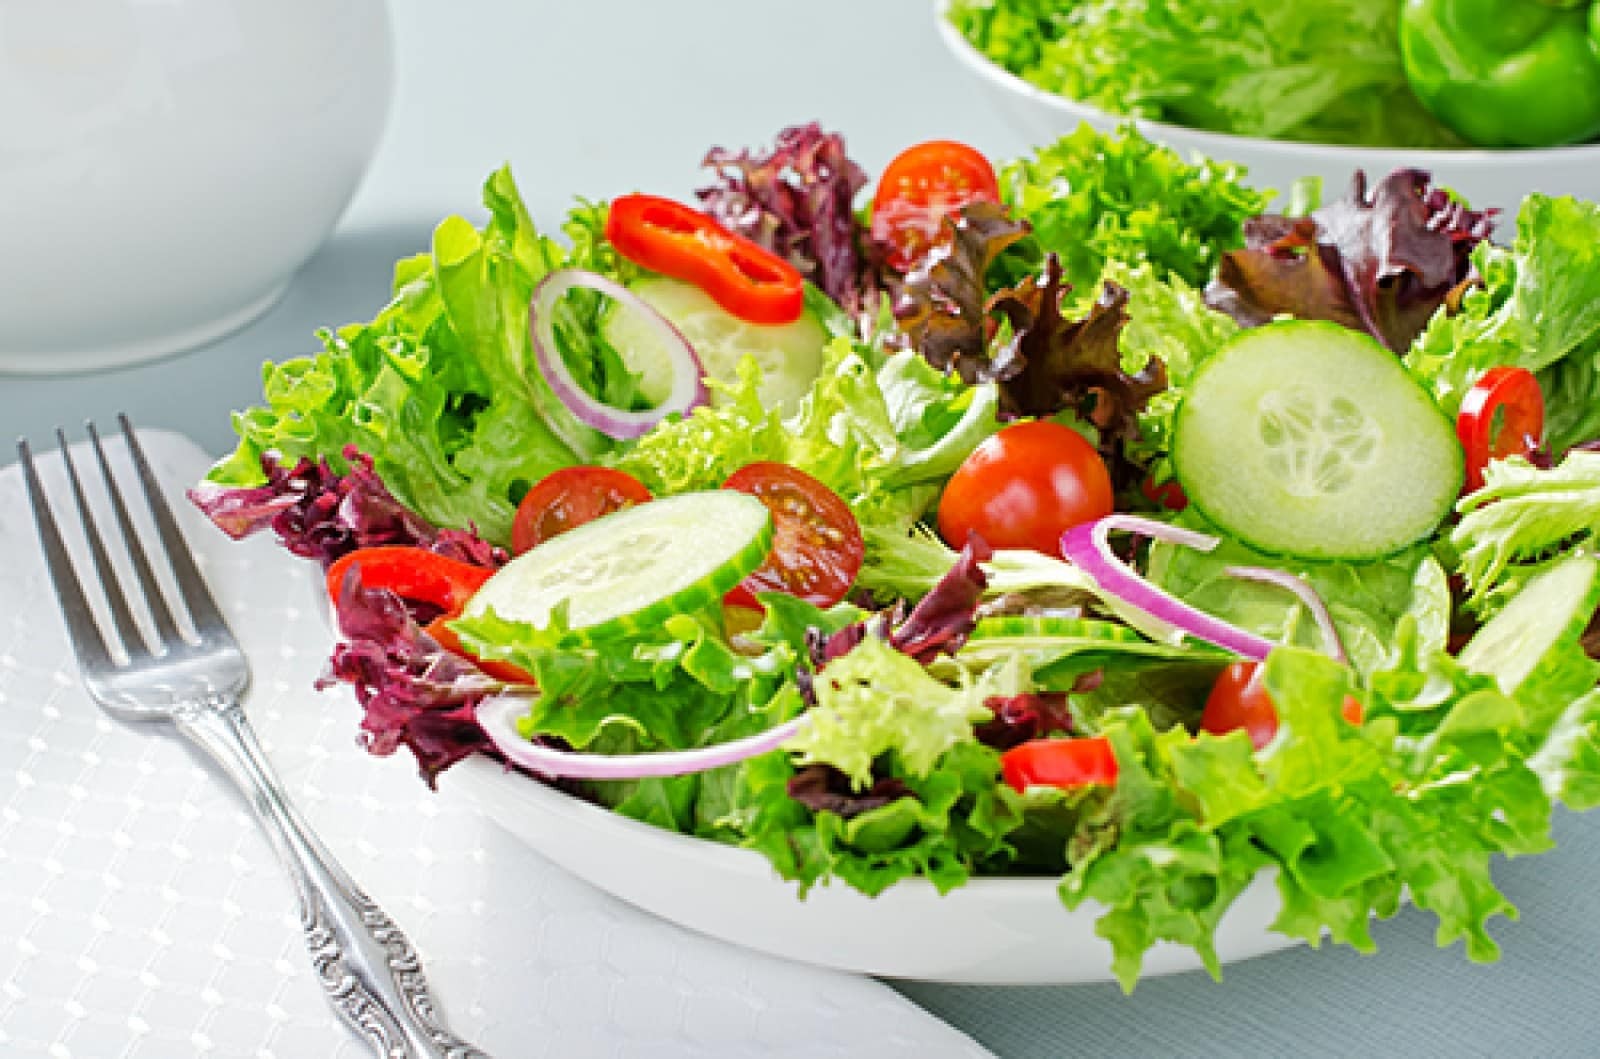 Salad là một trong những thực phẩm không làm tăng cân